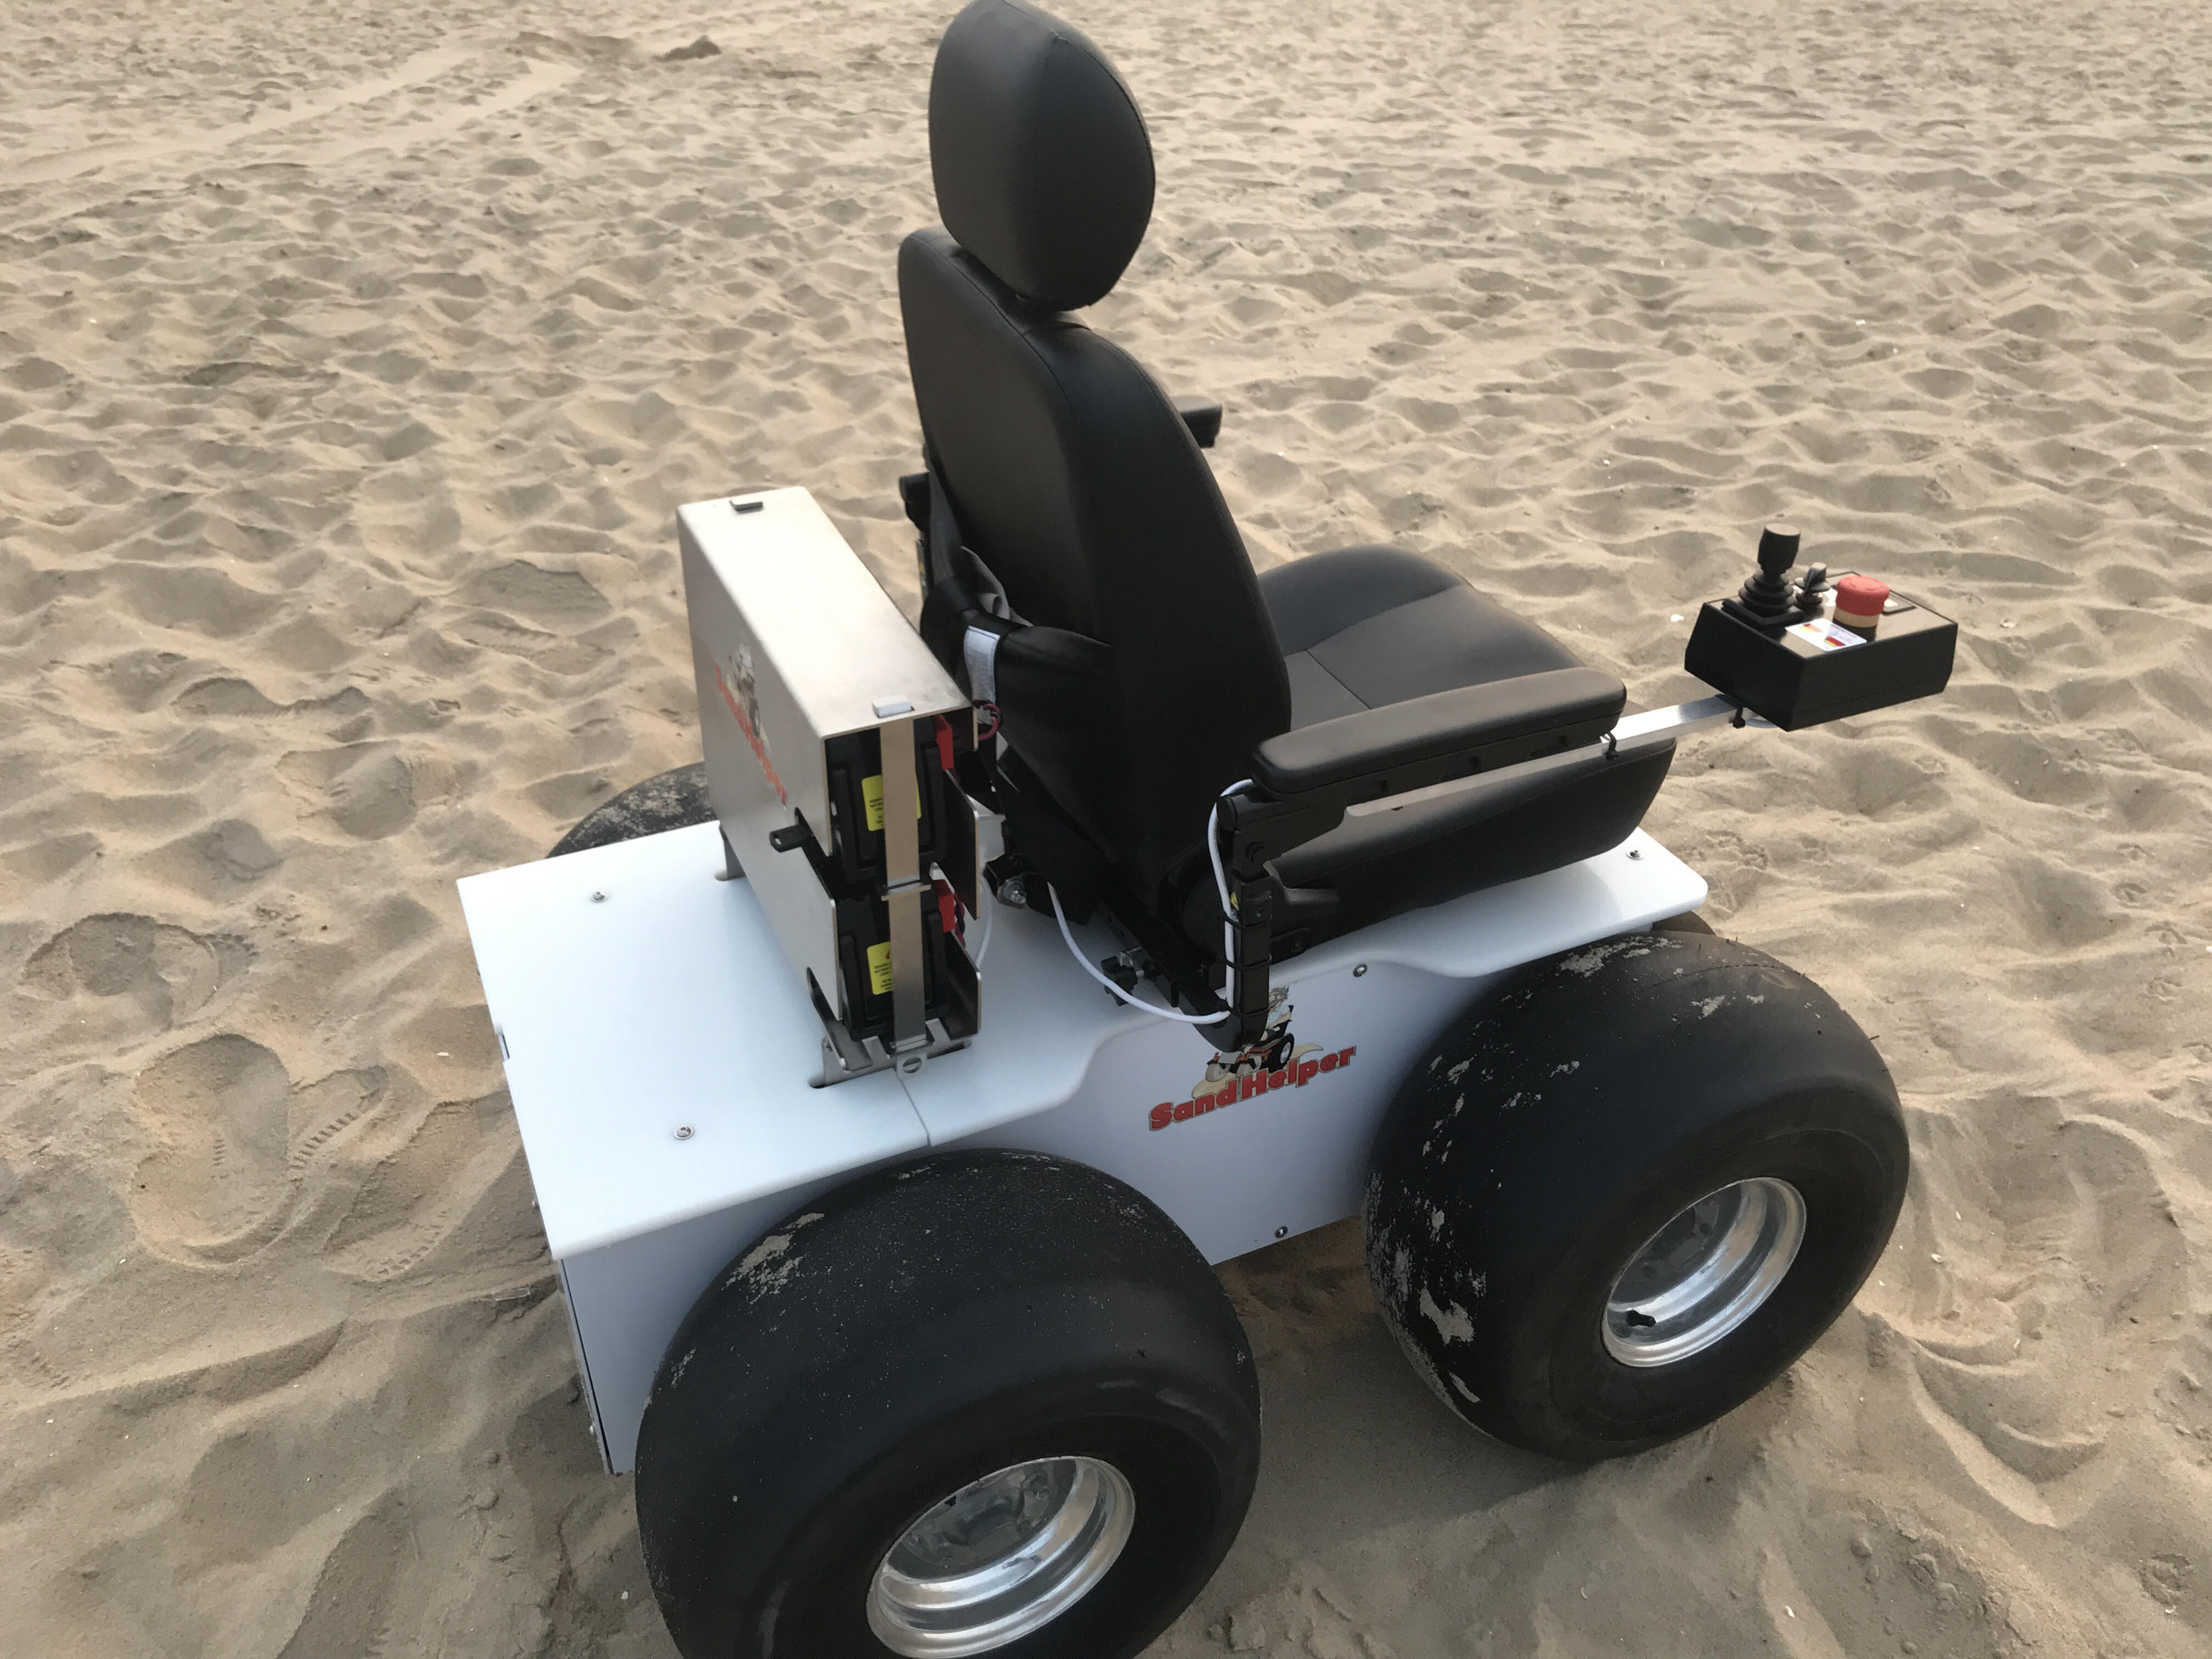 sand-helper-beach-wheelchair-rear-side-view